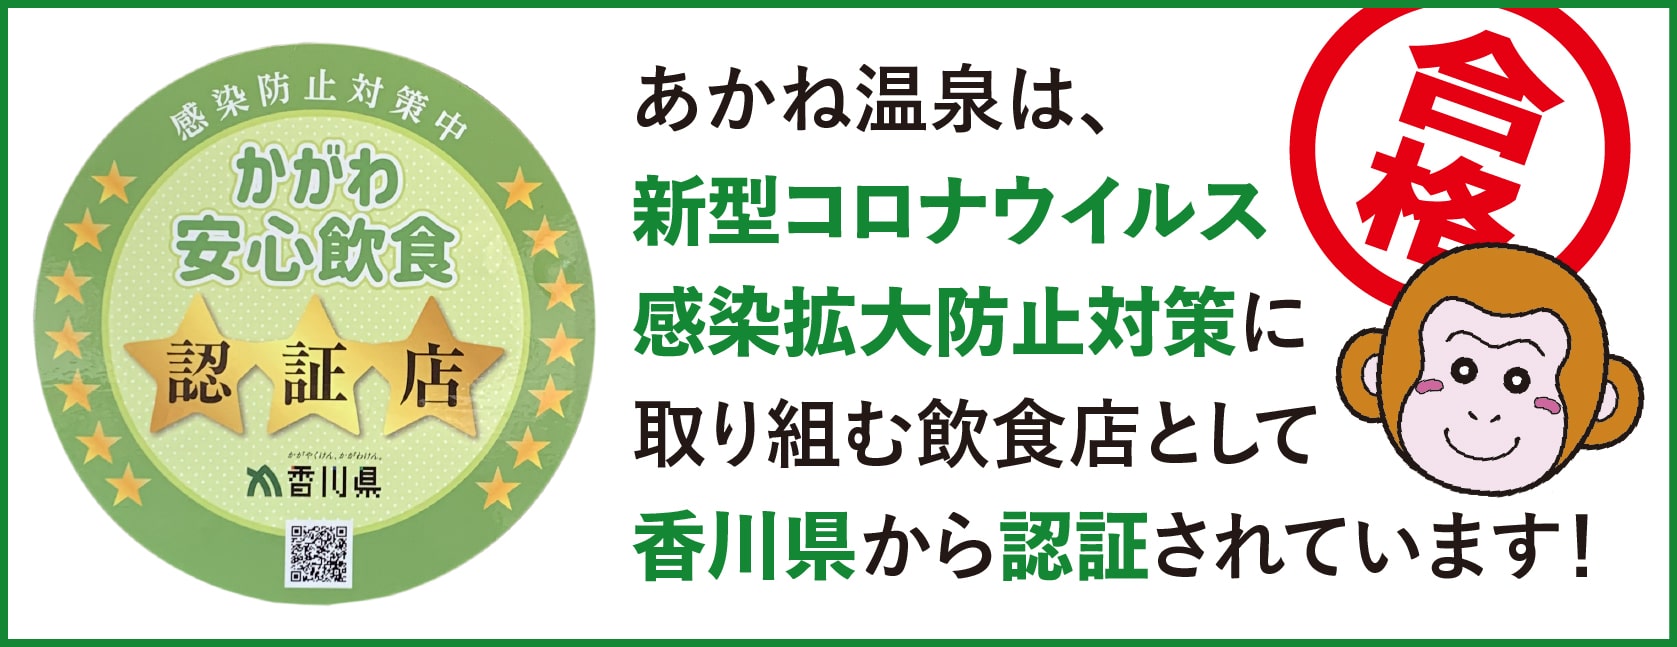 あかね温泉は、新型コロナウイルス感染拡大防止対策に取り組む飲食店として香川県から認証されています！